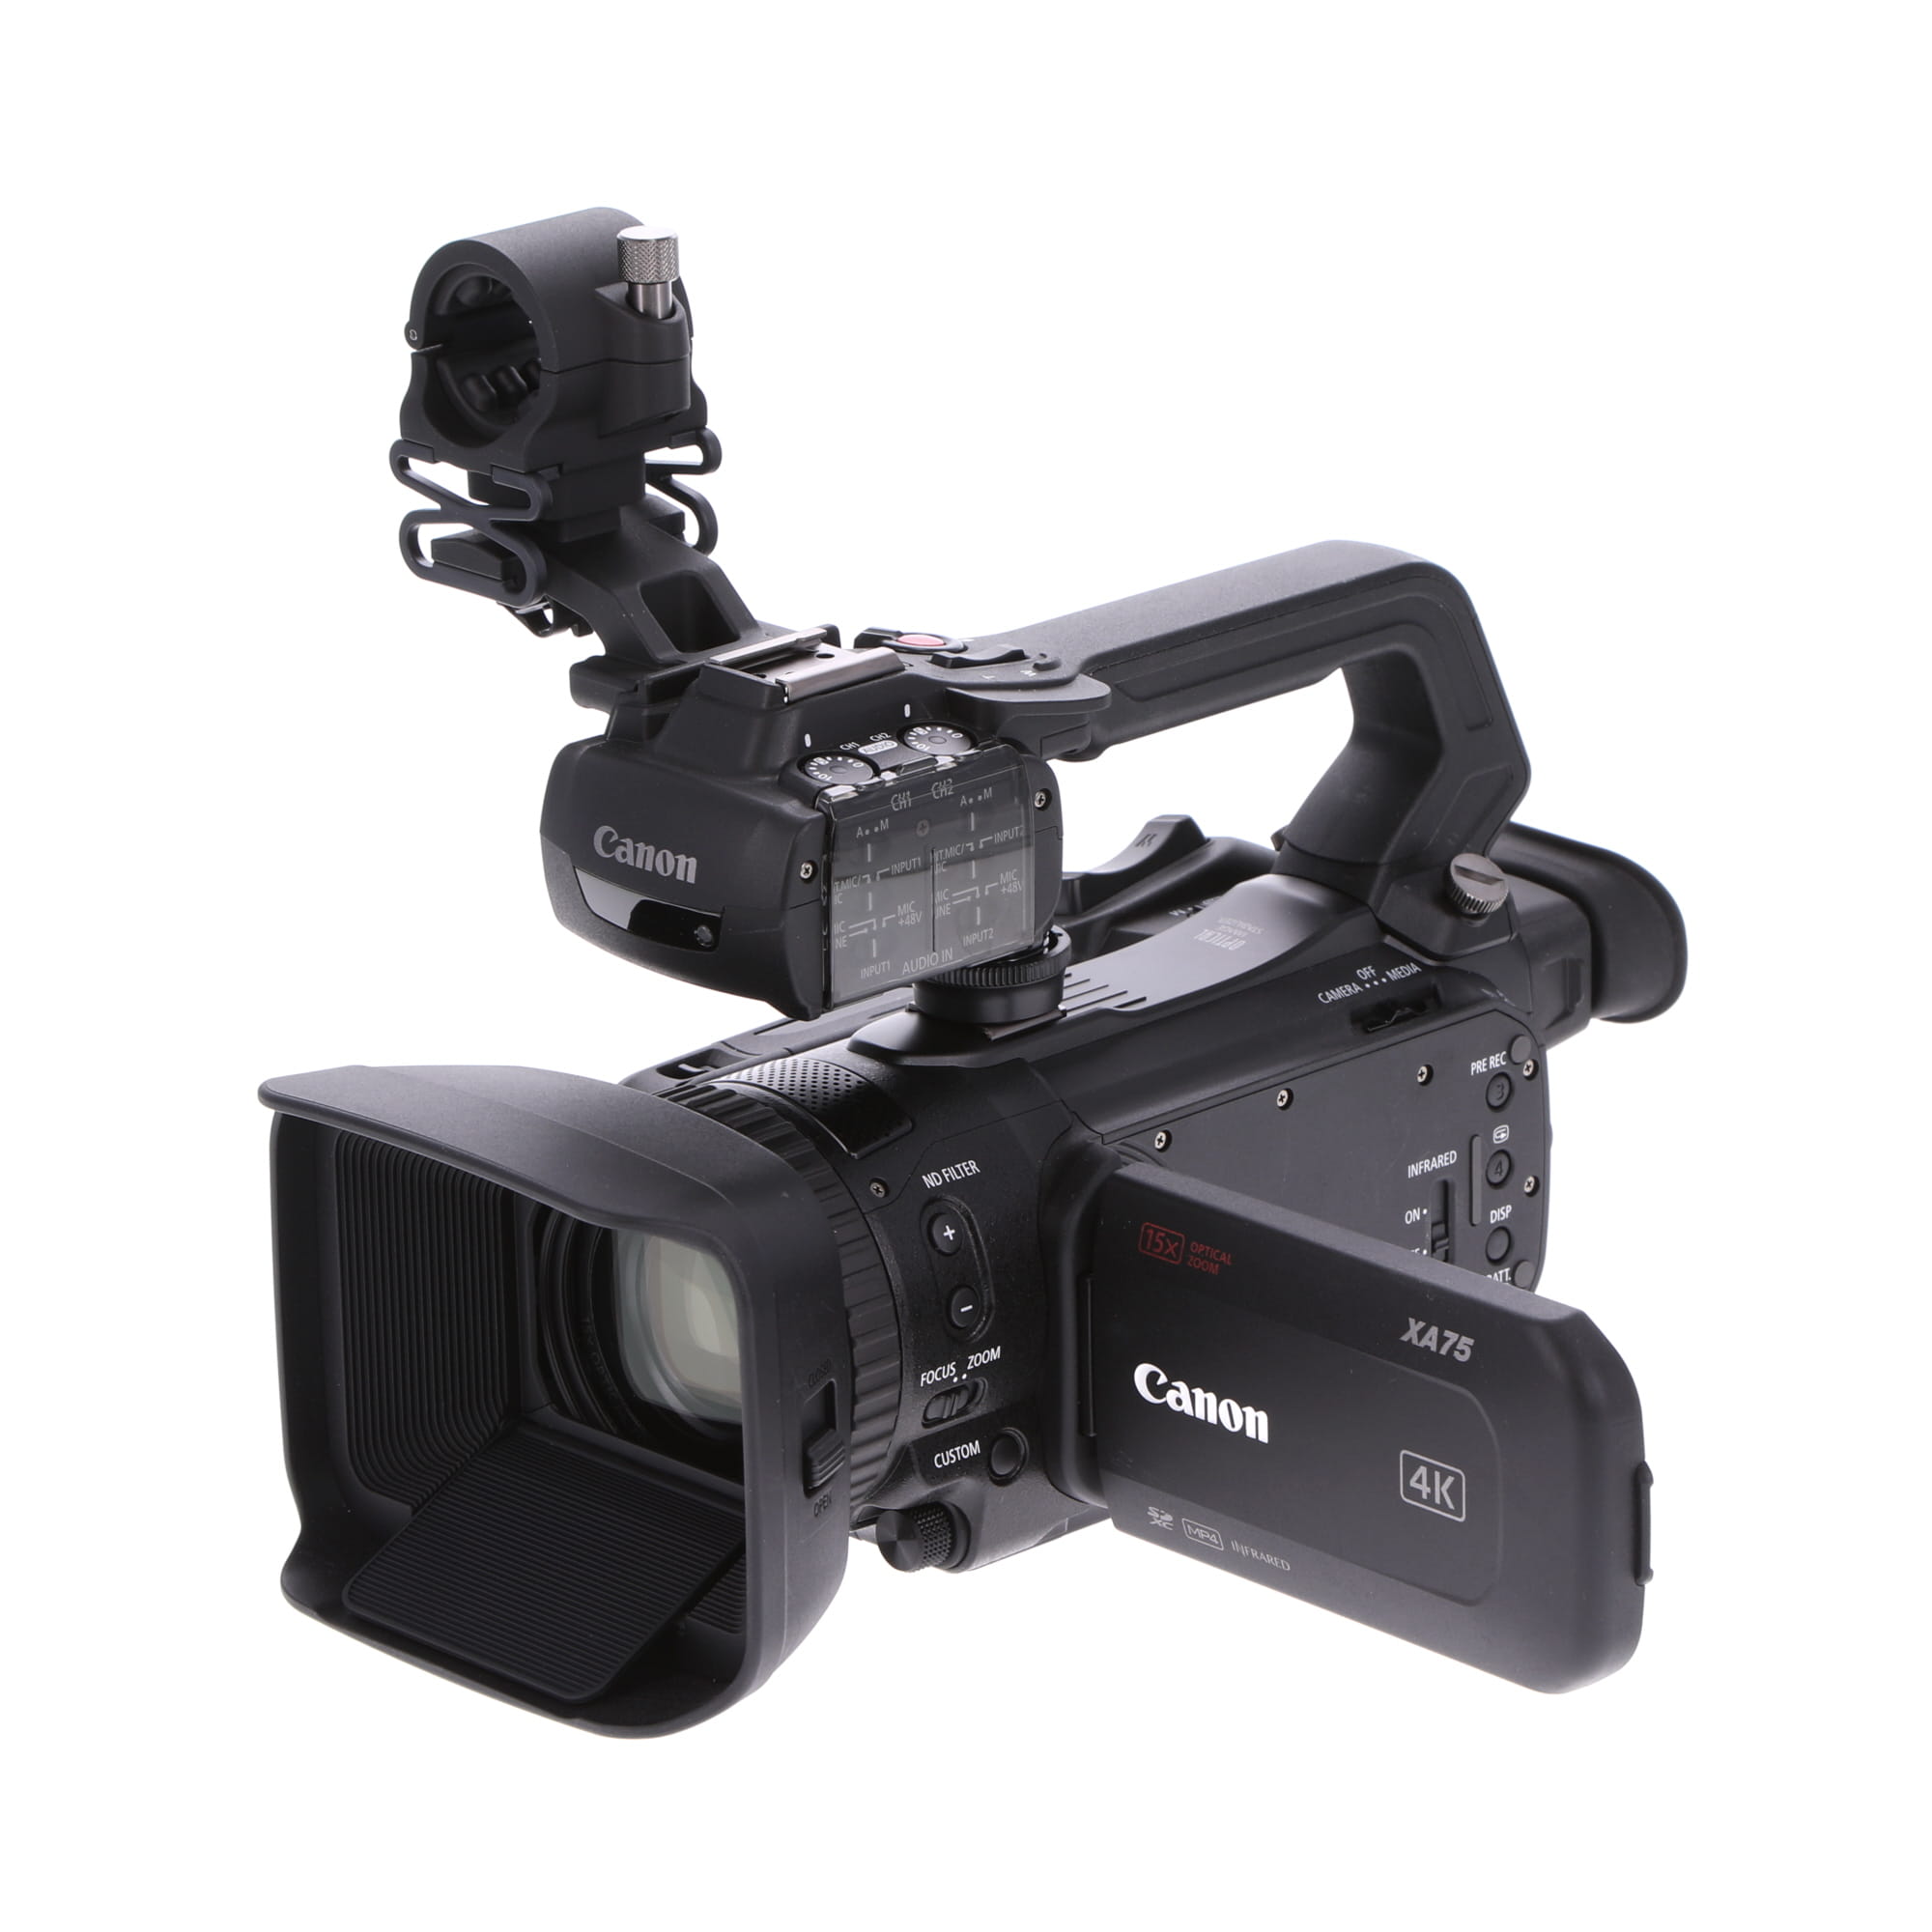 マーケティング キヤノン 4Kビデオカメラ XA75 JP